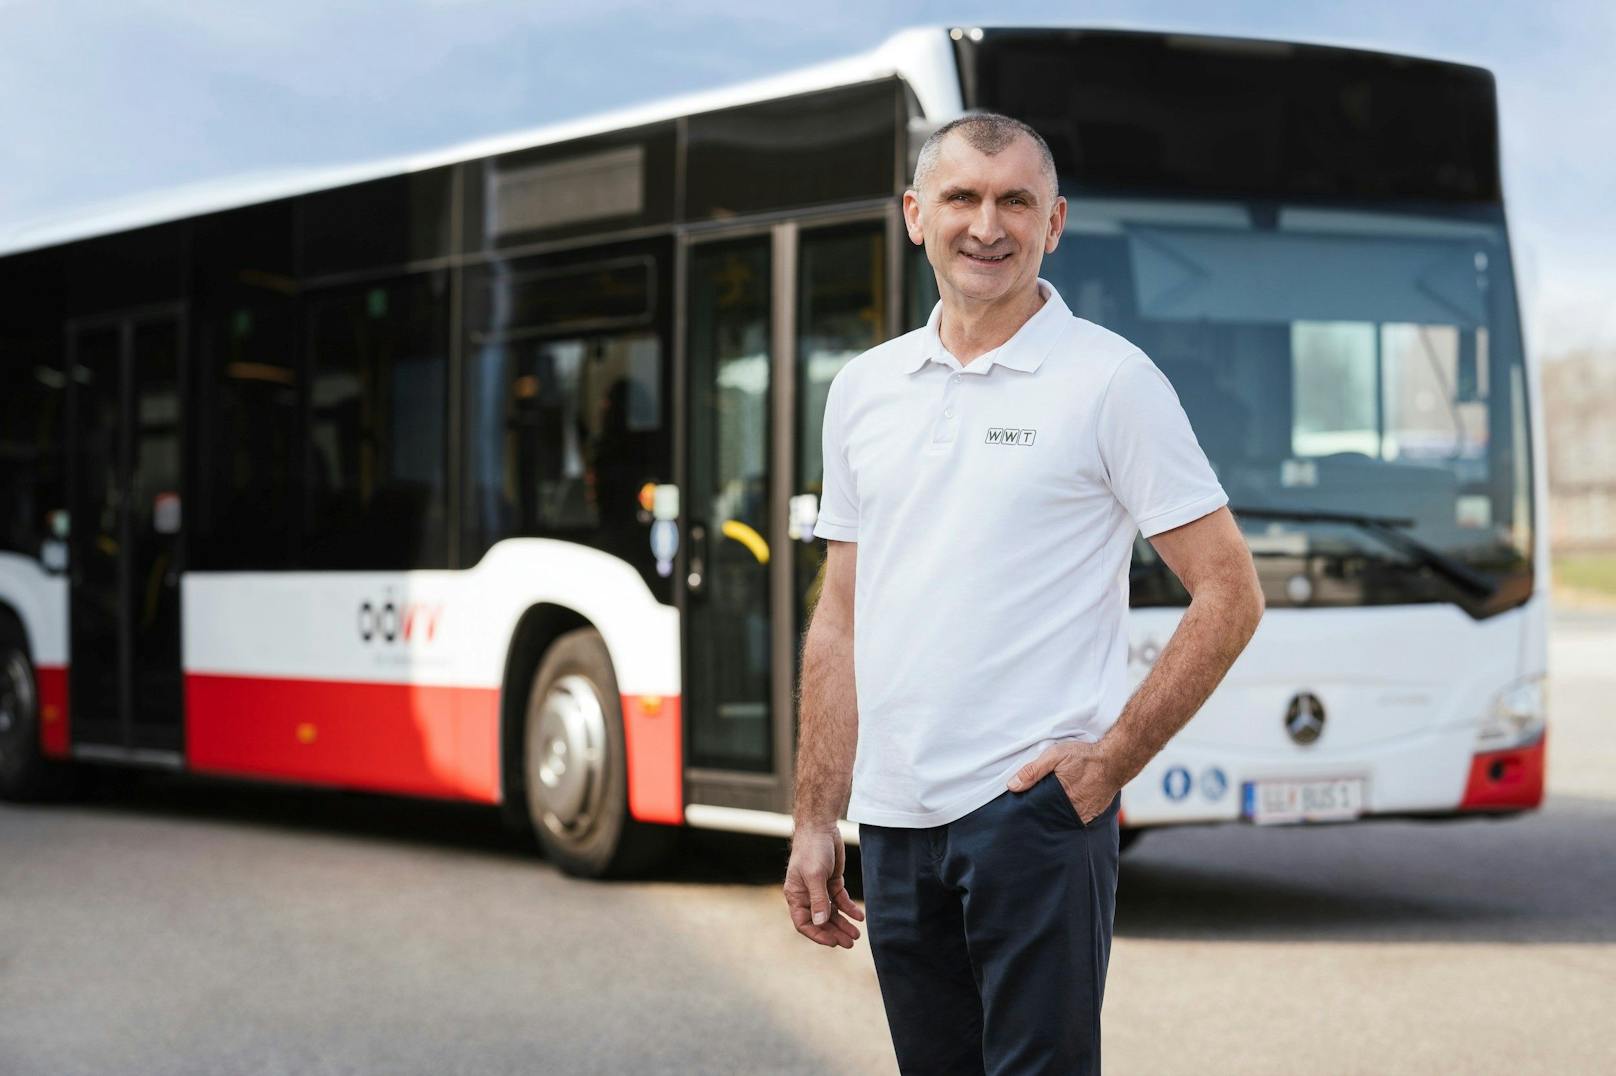 Veseljko: "Auch nach 30 Jahren macht mir Busfahren immer noch Freude."